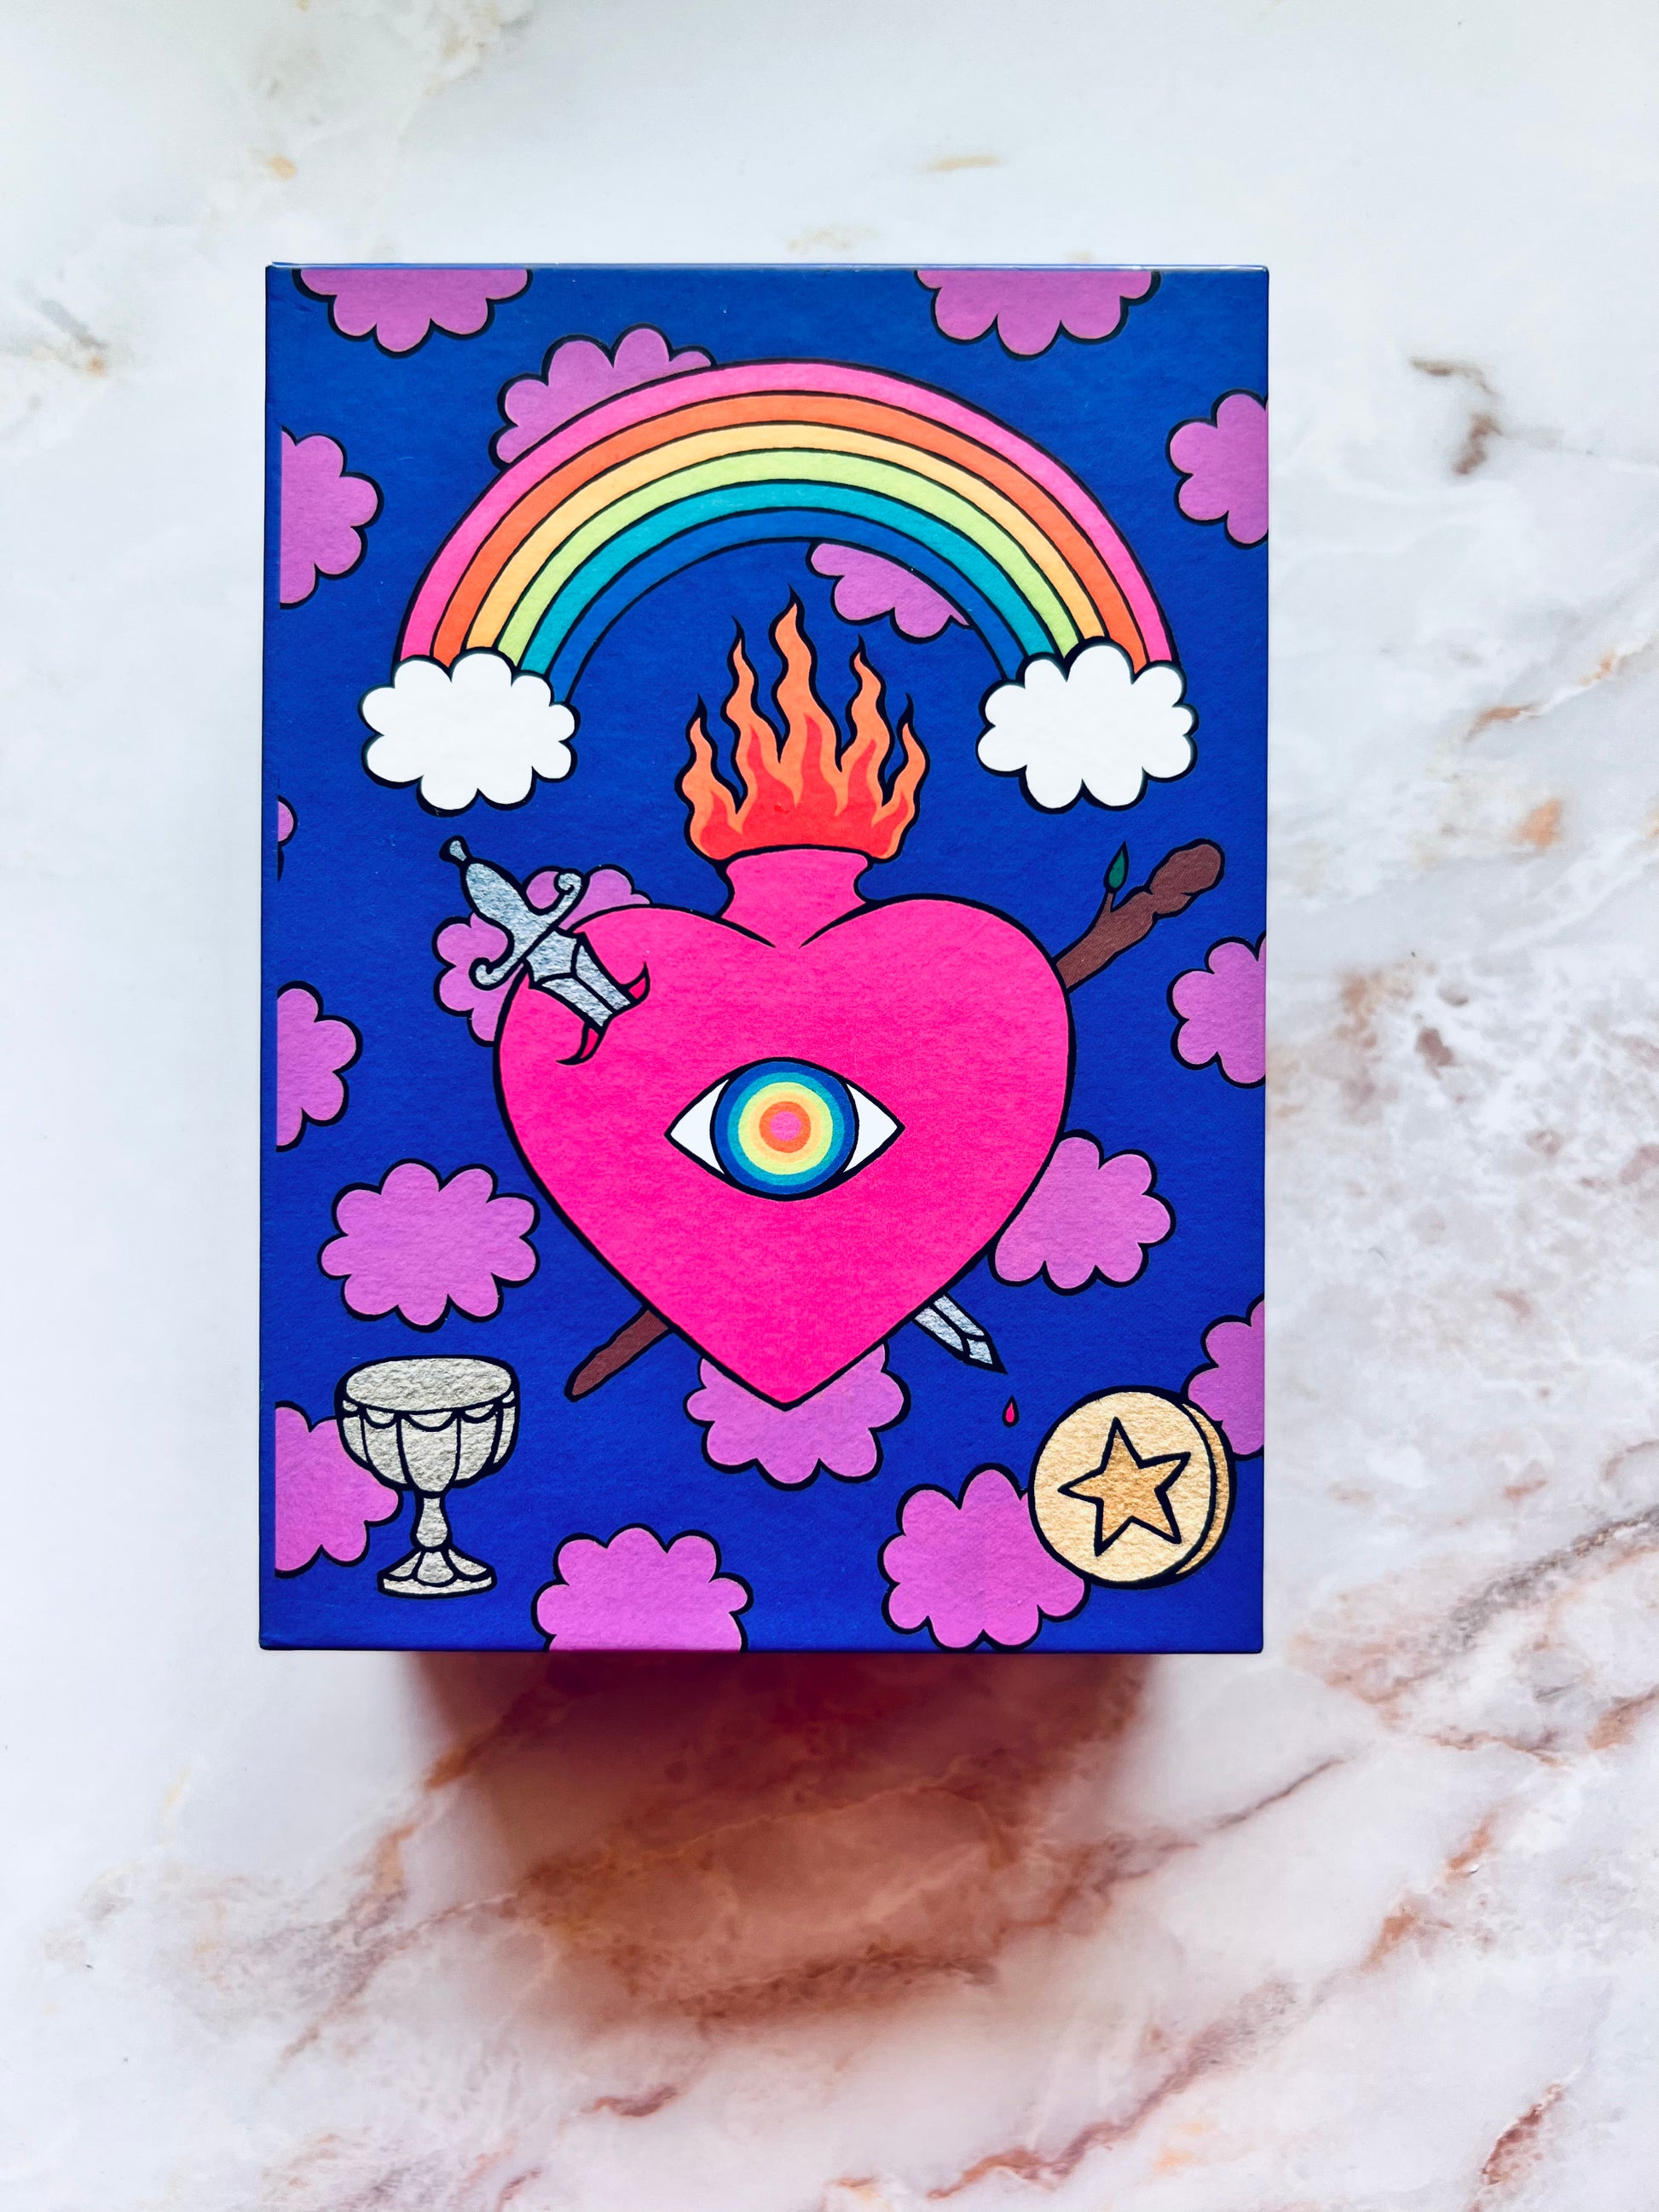 Rainbow Heart Tarot Deck Indie Tarot Deck